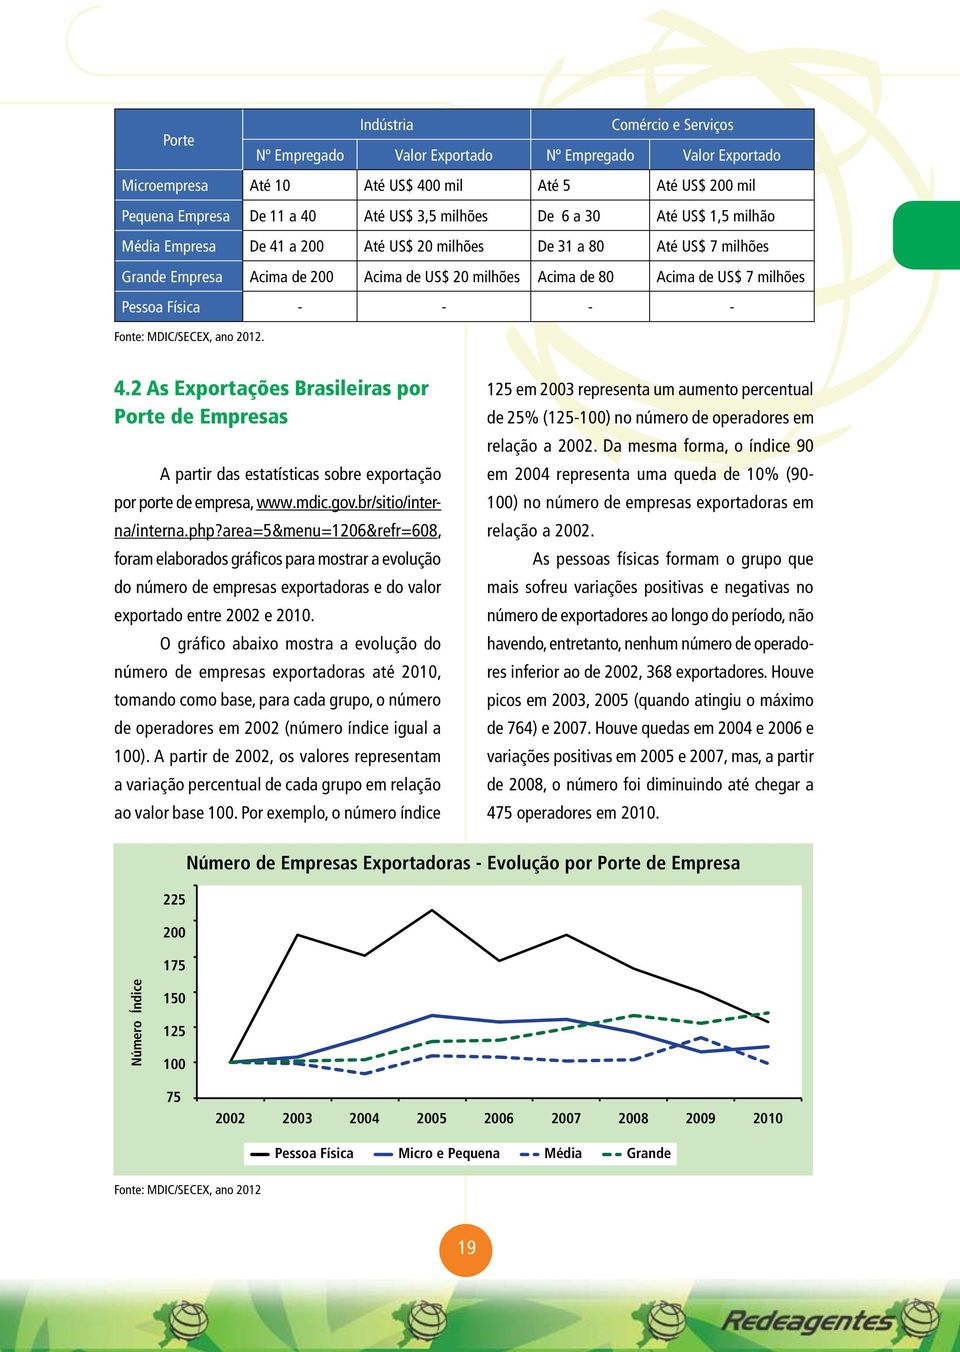 Física - - - - Fonte: MDIC/SECEX, ano 2012. 4.2 As Exportações Brasileiras por Porte de Empresas A partir das estatísticas sobre exportação por porte de empresa, www.mdic.gov.br/sitio/interna/interna.